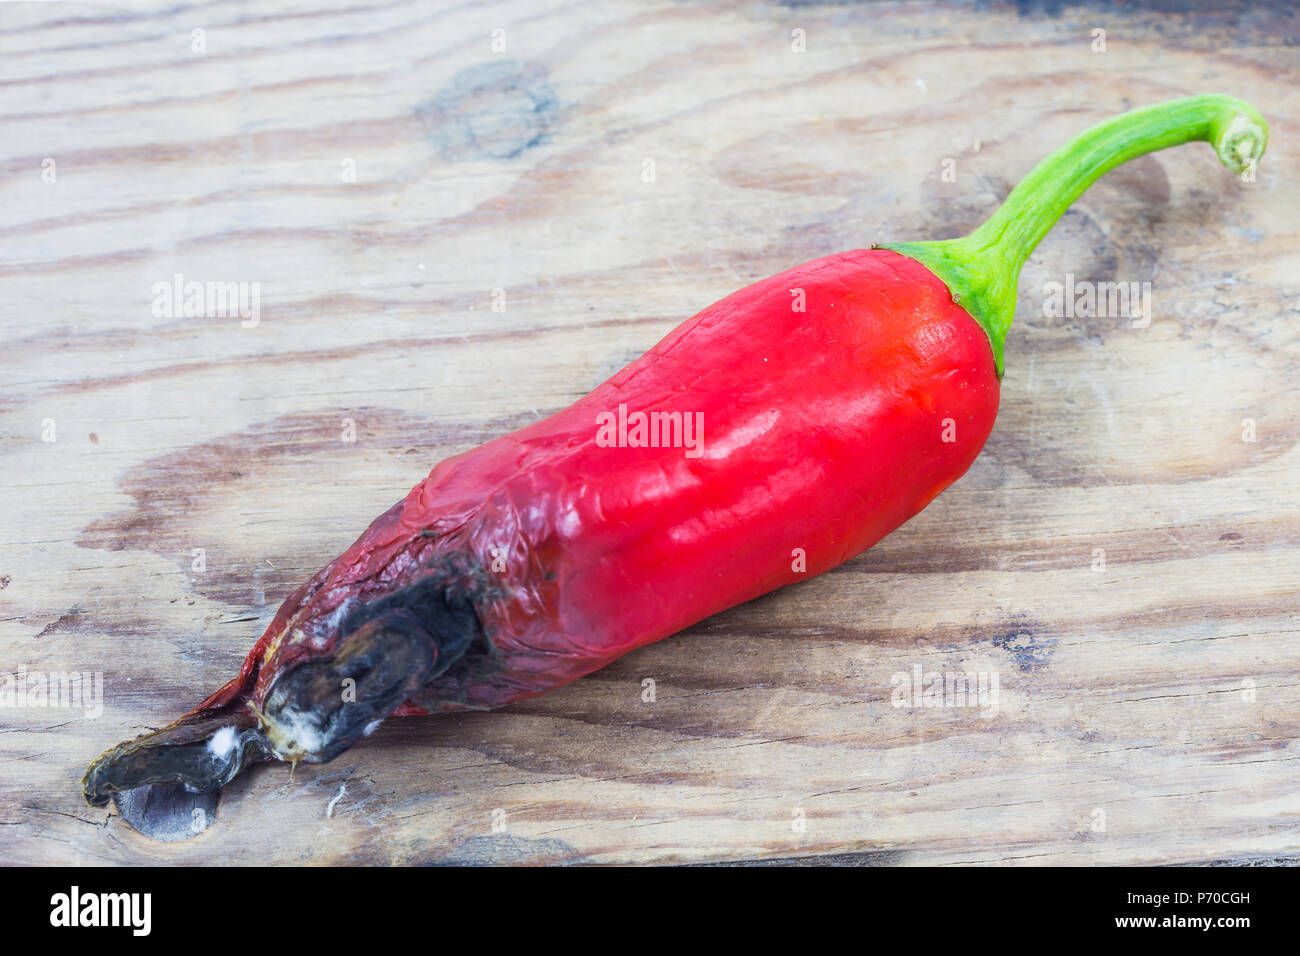 Schimmel von red chili auf hölzernen Hintergrund/faule rote Chili auf Holz  in weißen Hintergrund Stockfotografie - Alamy